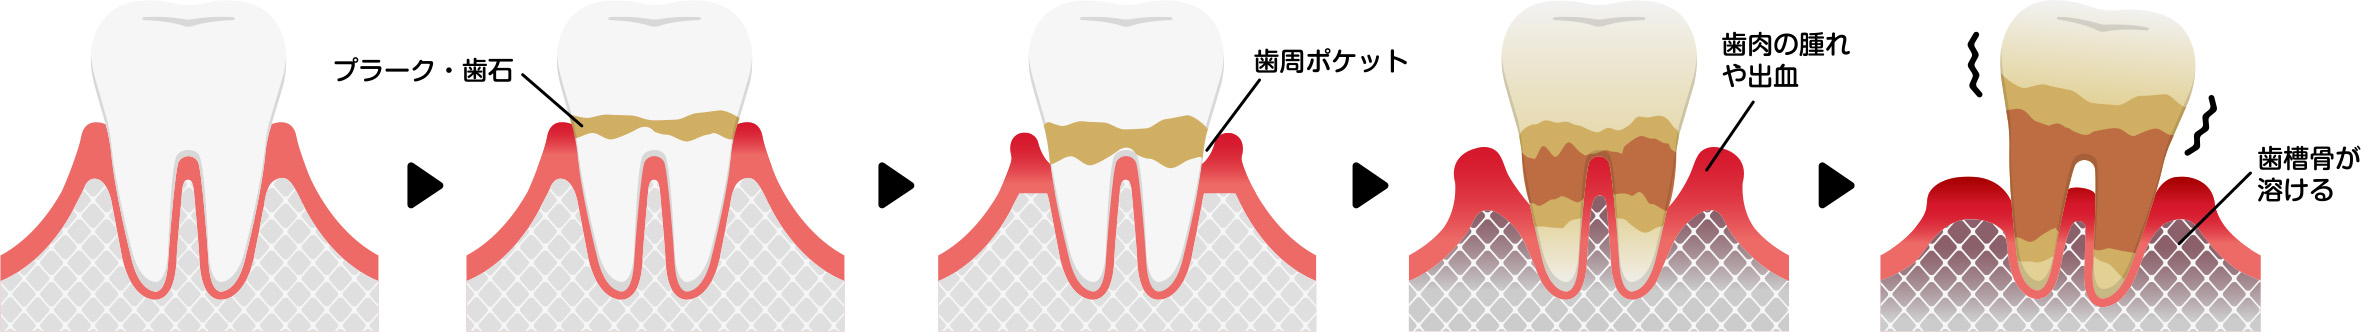 歯周病の進行状況について